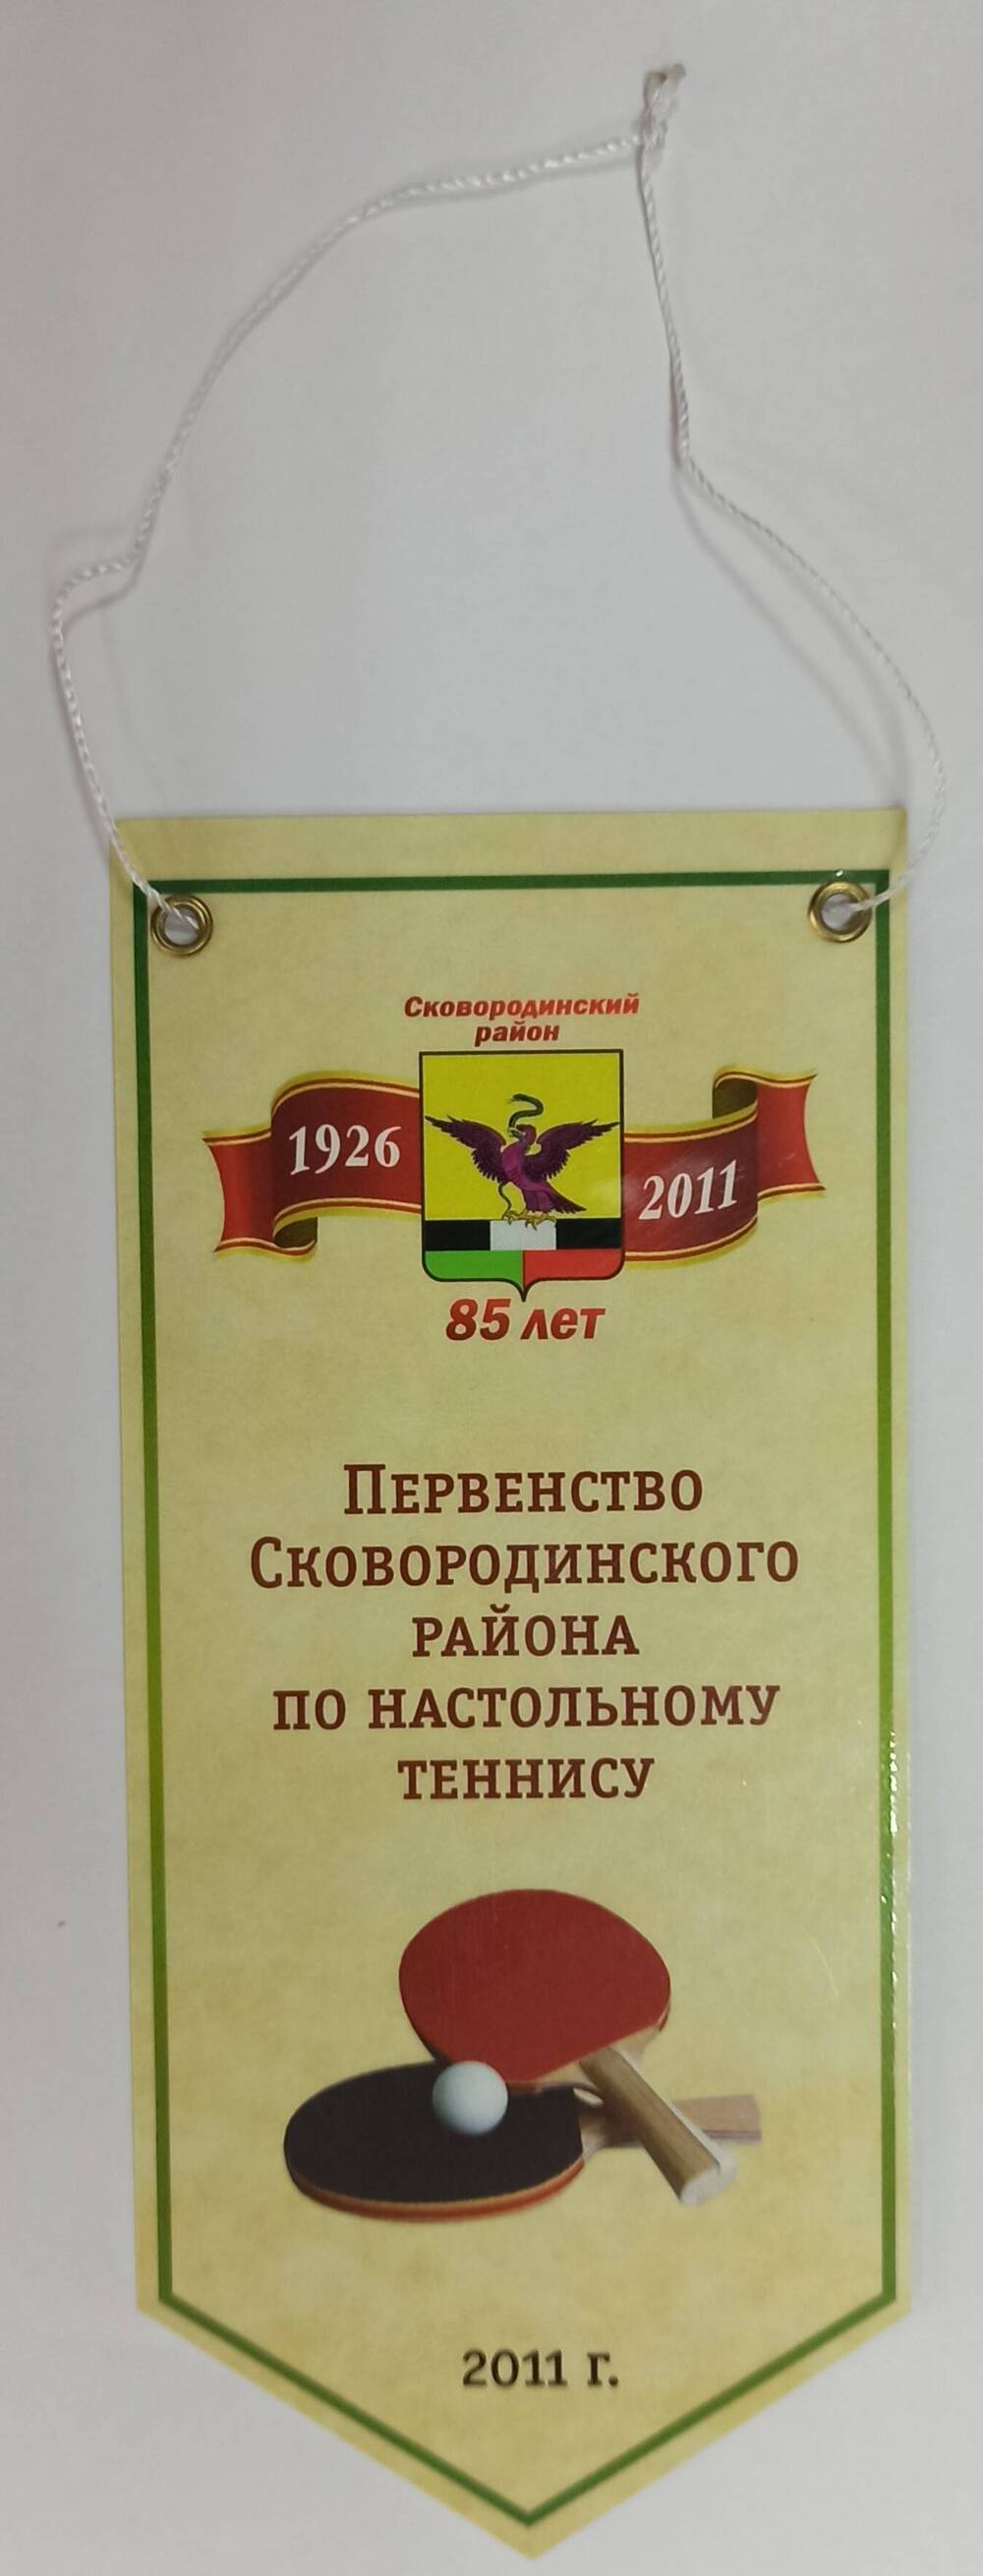 Вымпел Первенство Сковородинского района по настольному теннису к 85-летию Сковородинского района.